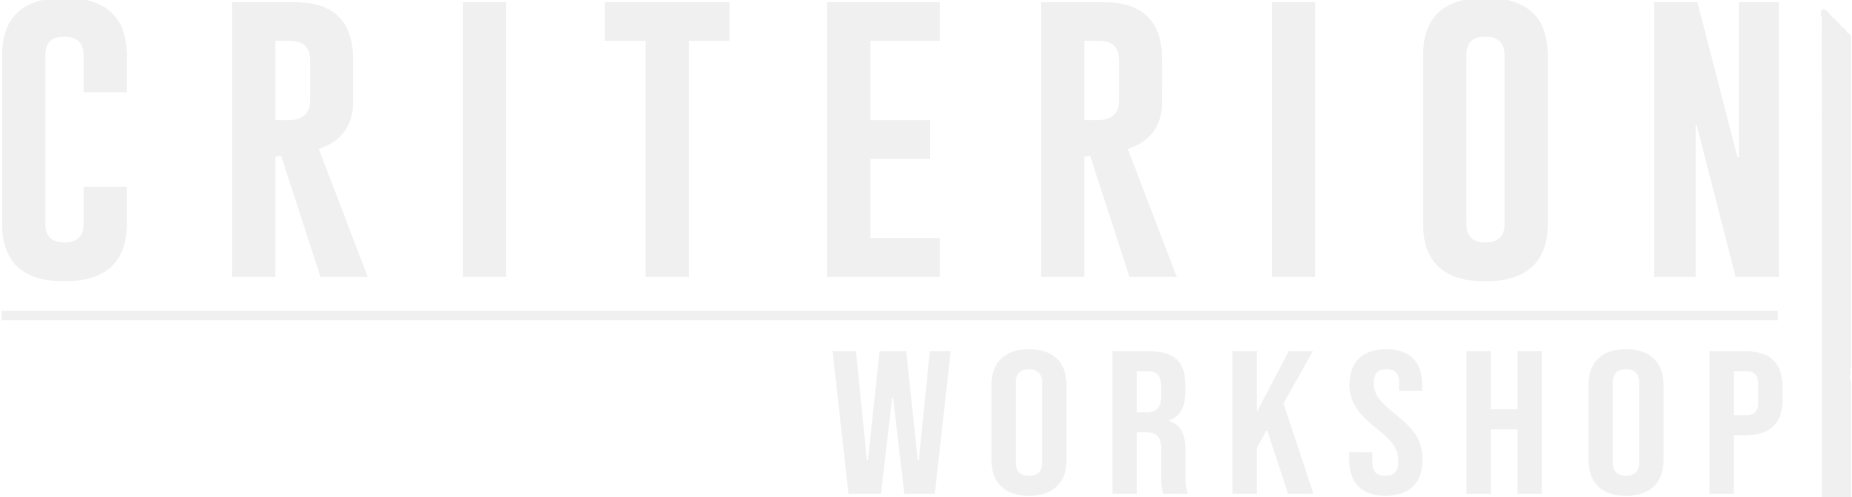 Criterion Workshop Logo- zoomed